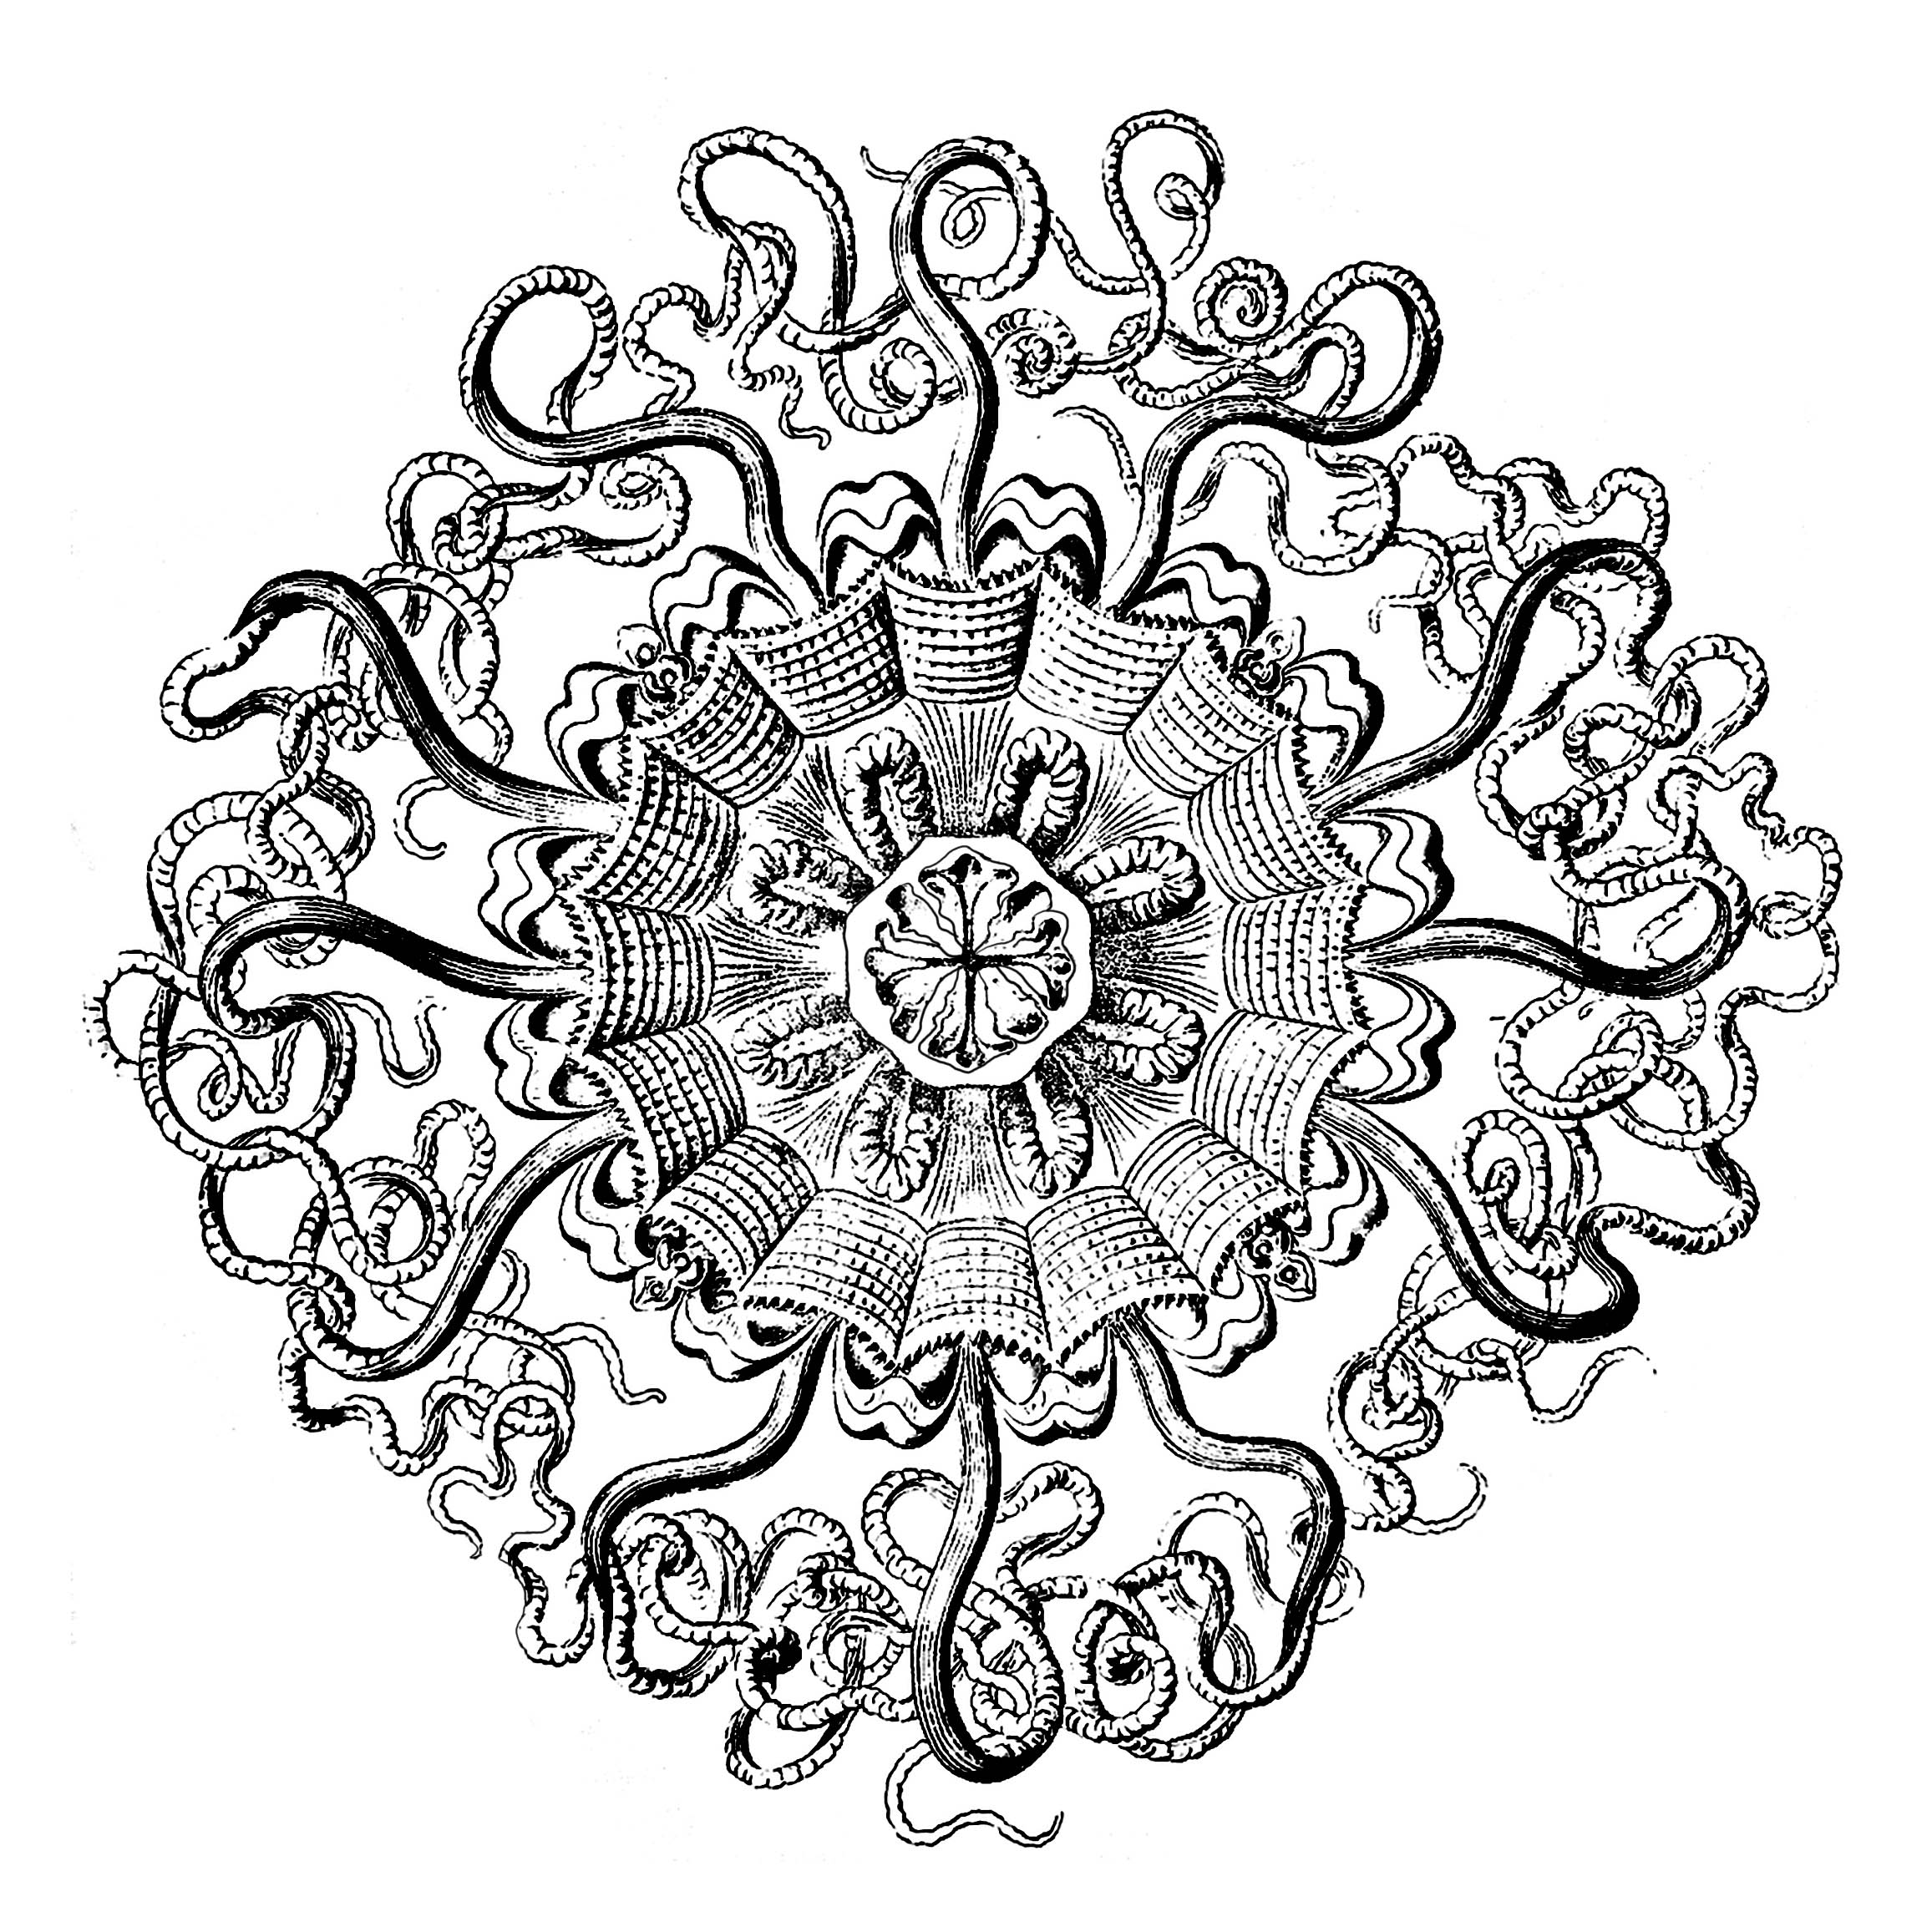 Aimez vous les méduses ? Mandala créé à partir d'une planche anatomique du 18e siècle